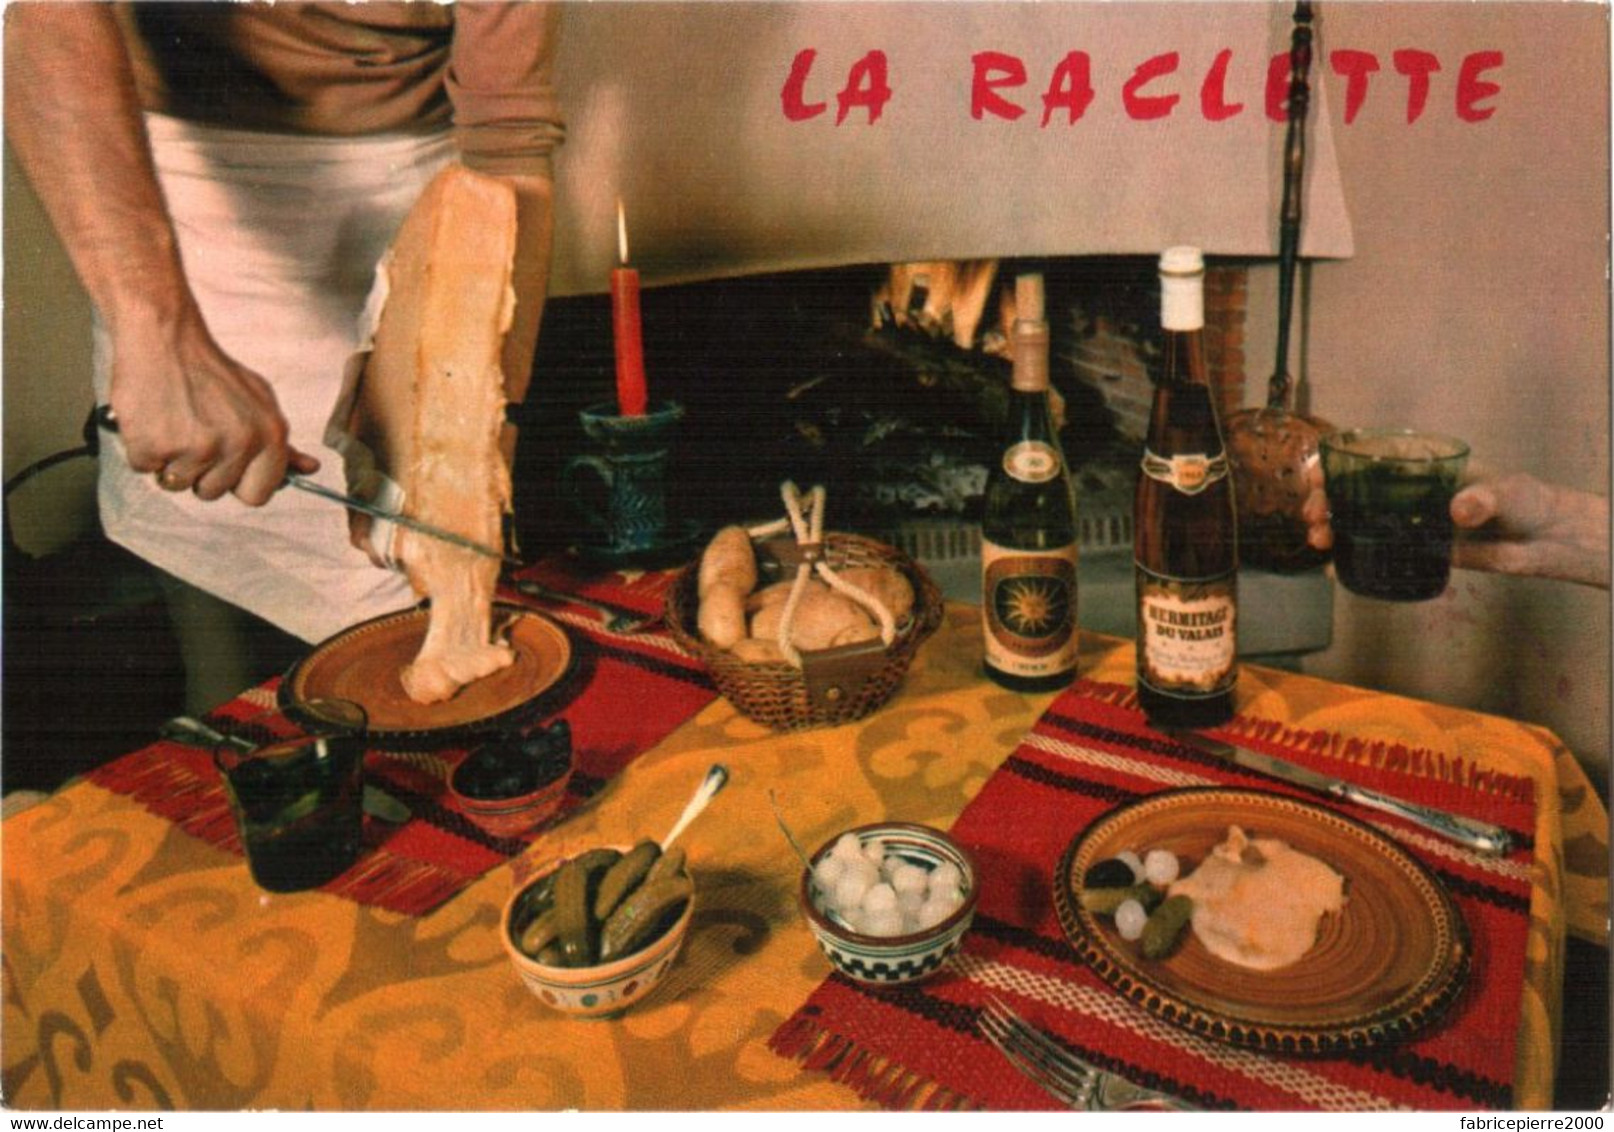 CPM Recette De La Raclette, Une Spécialité Alpine TBE éd. IRIS Cap-Théojac - Recettes (cuisine)